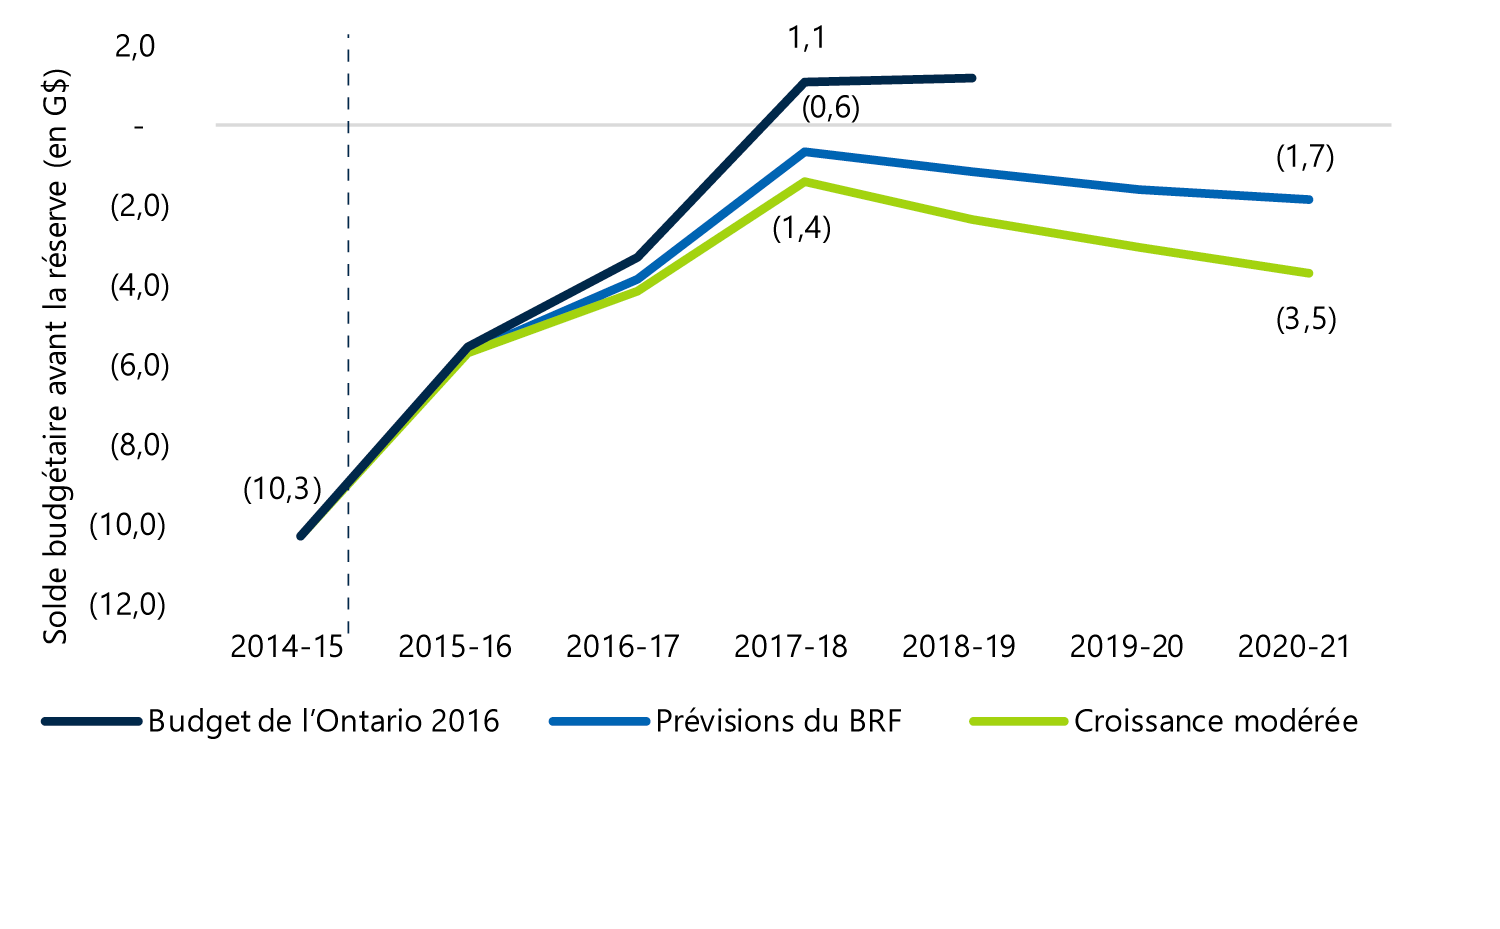 Solde du budget de l’Ontario selon différents scénarios économiques